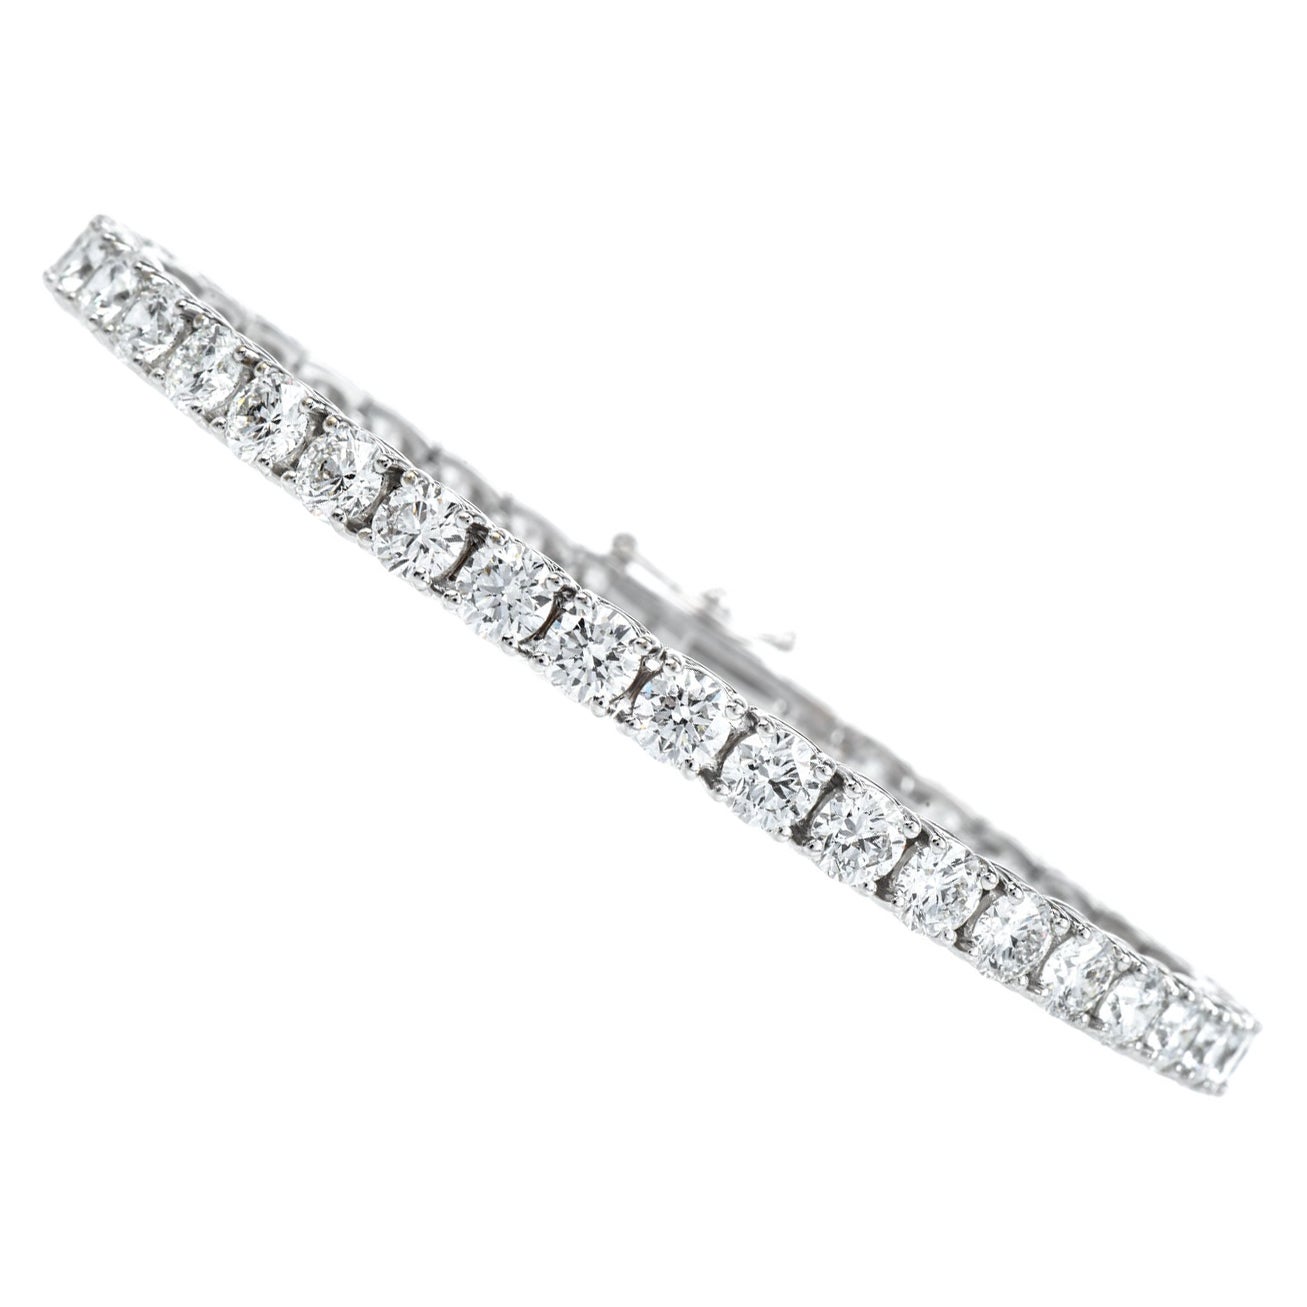 Bracelet tennis classique moderne en or blanc 18 carats avec 12,48 diamants